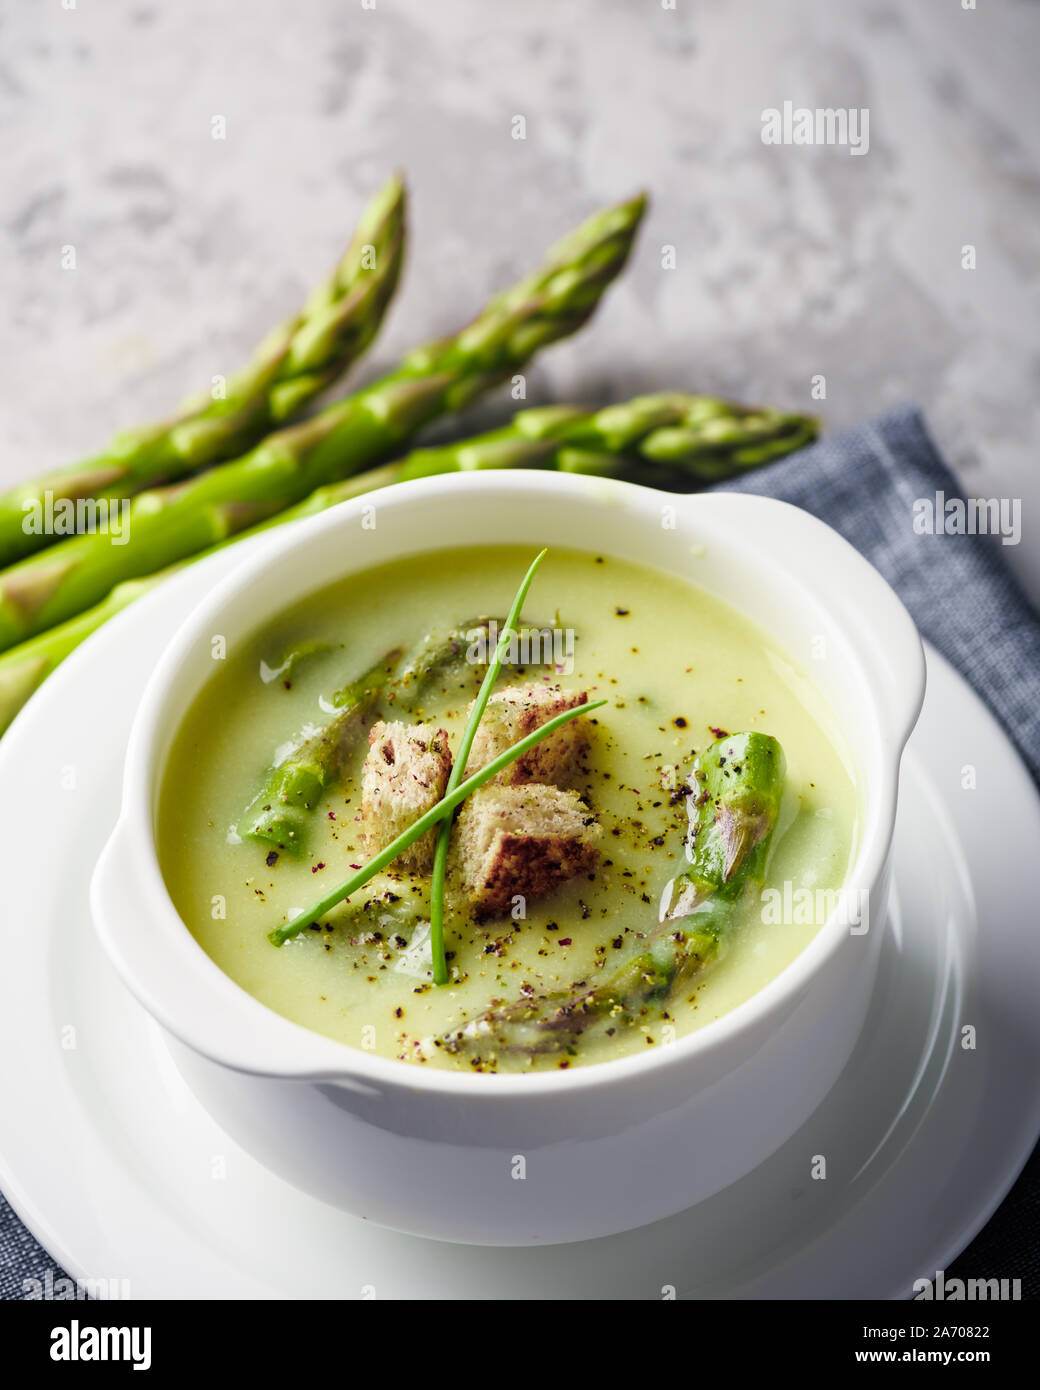 Verde zuppa di asparagi con i cracker in bianco ciotola closeup. Fotografia di cibo Foto Stock